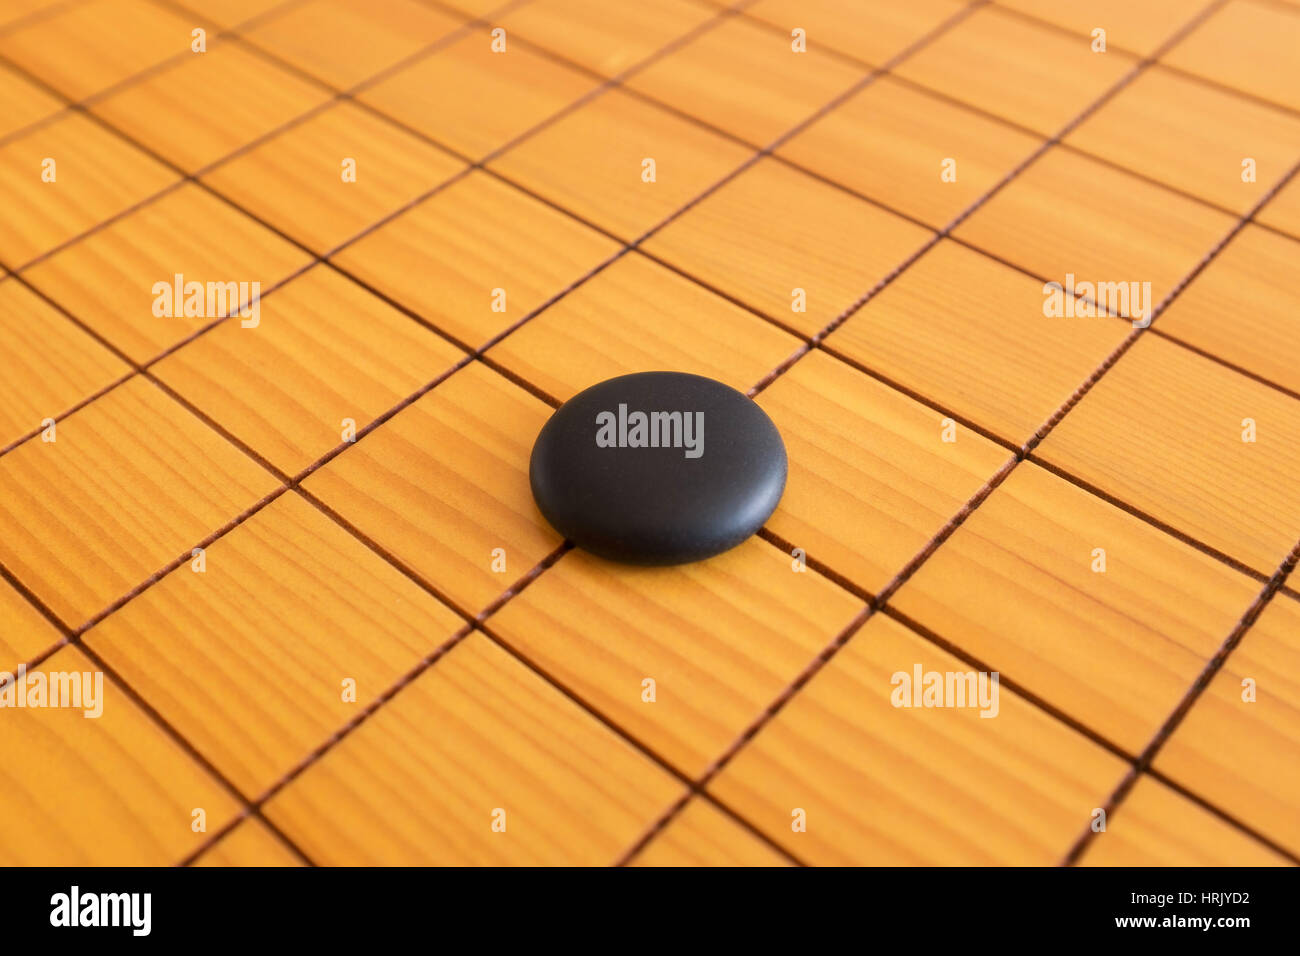 Gehen Sie Spiel oder Weiqi (chinesische Brettspiel) Hintergrund Stockfoto